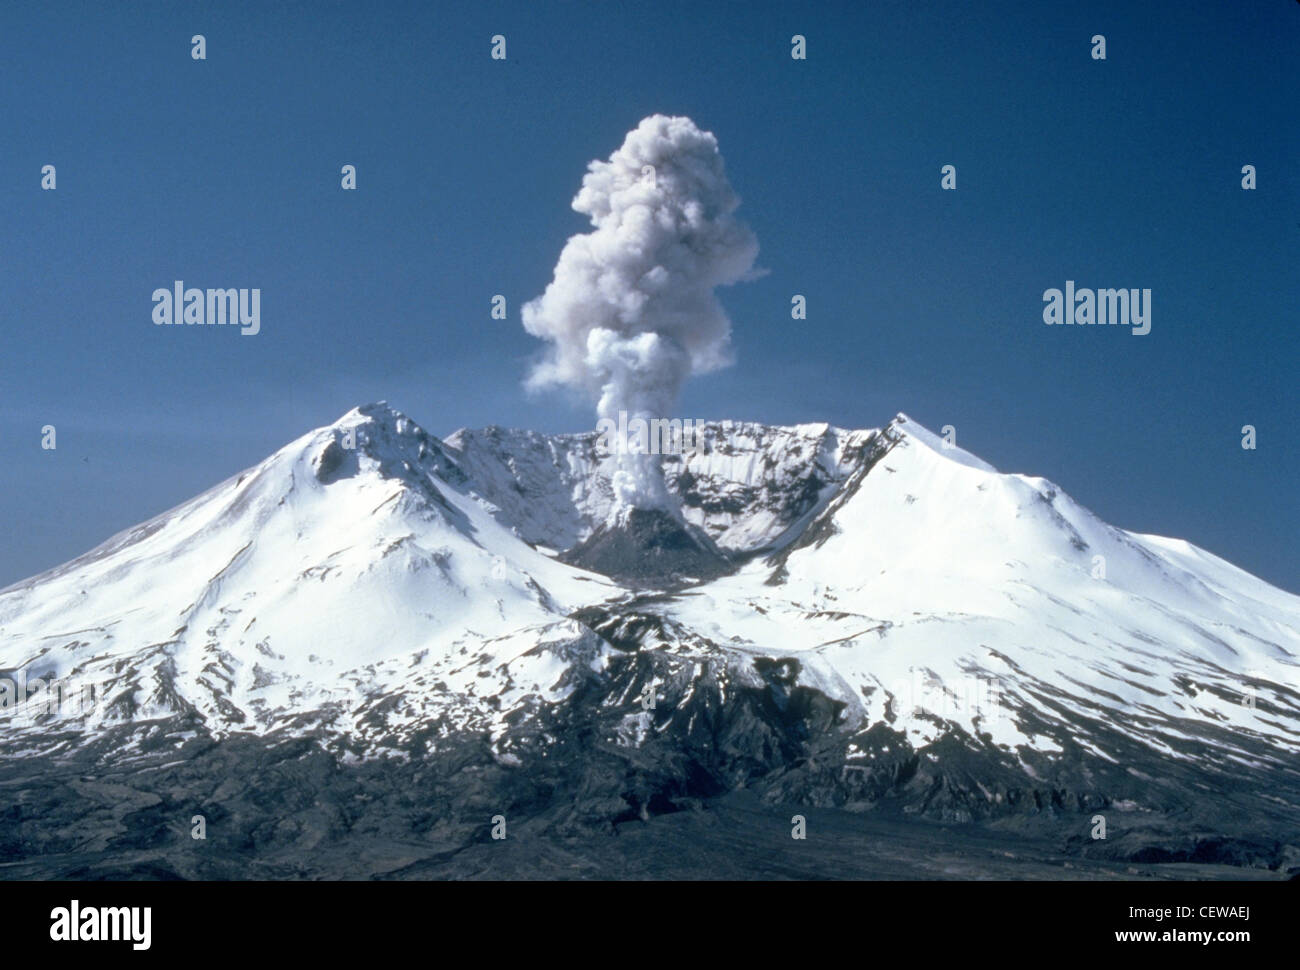 Al Monte St. Helens si sono verificati, nei primi anni ottanta, dei pennacchi di vapore, gas e cenere. Nelle giornate limpide si potevano vedere da Portland, Oregon, a 81 miglia (50 chilometri) a sud. Il pennacchio fotografato qui sorse di quasi 1,000 metri (3,000 piedi) sopra il bordo del vulcano. La vista è da Harrys Ridge, 8 km a nord della montagna. Foto Stock